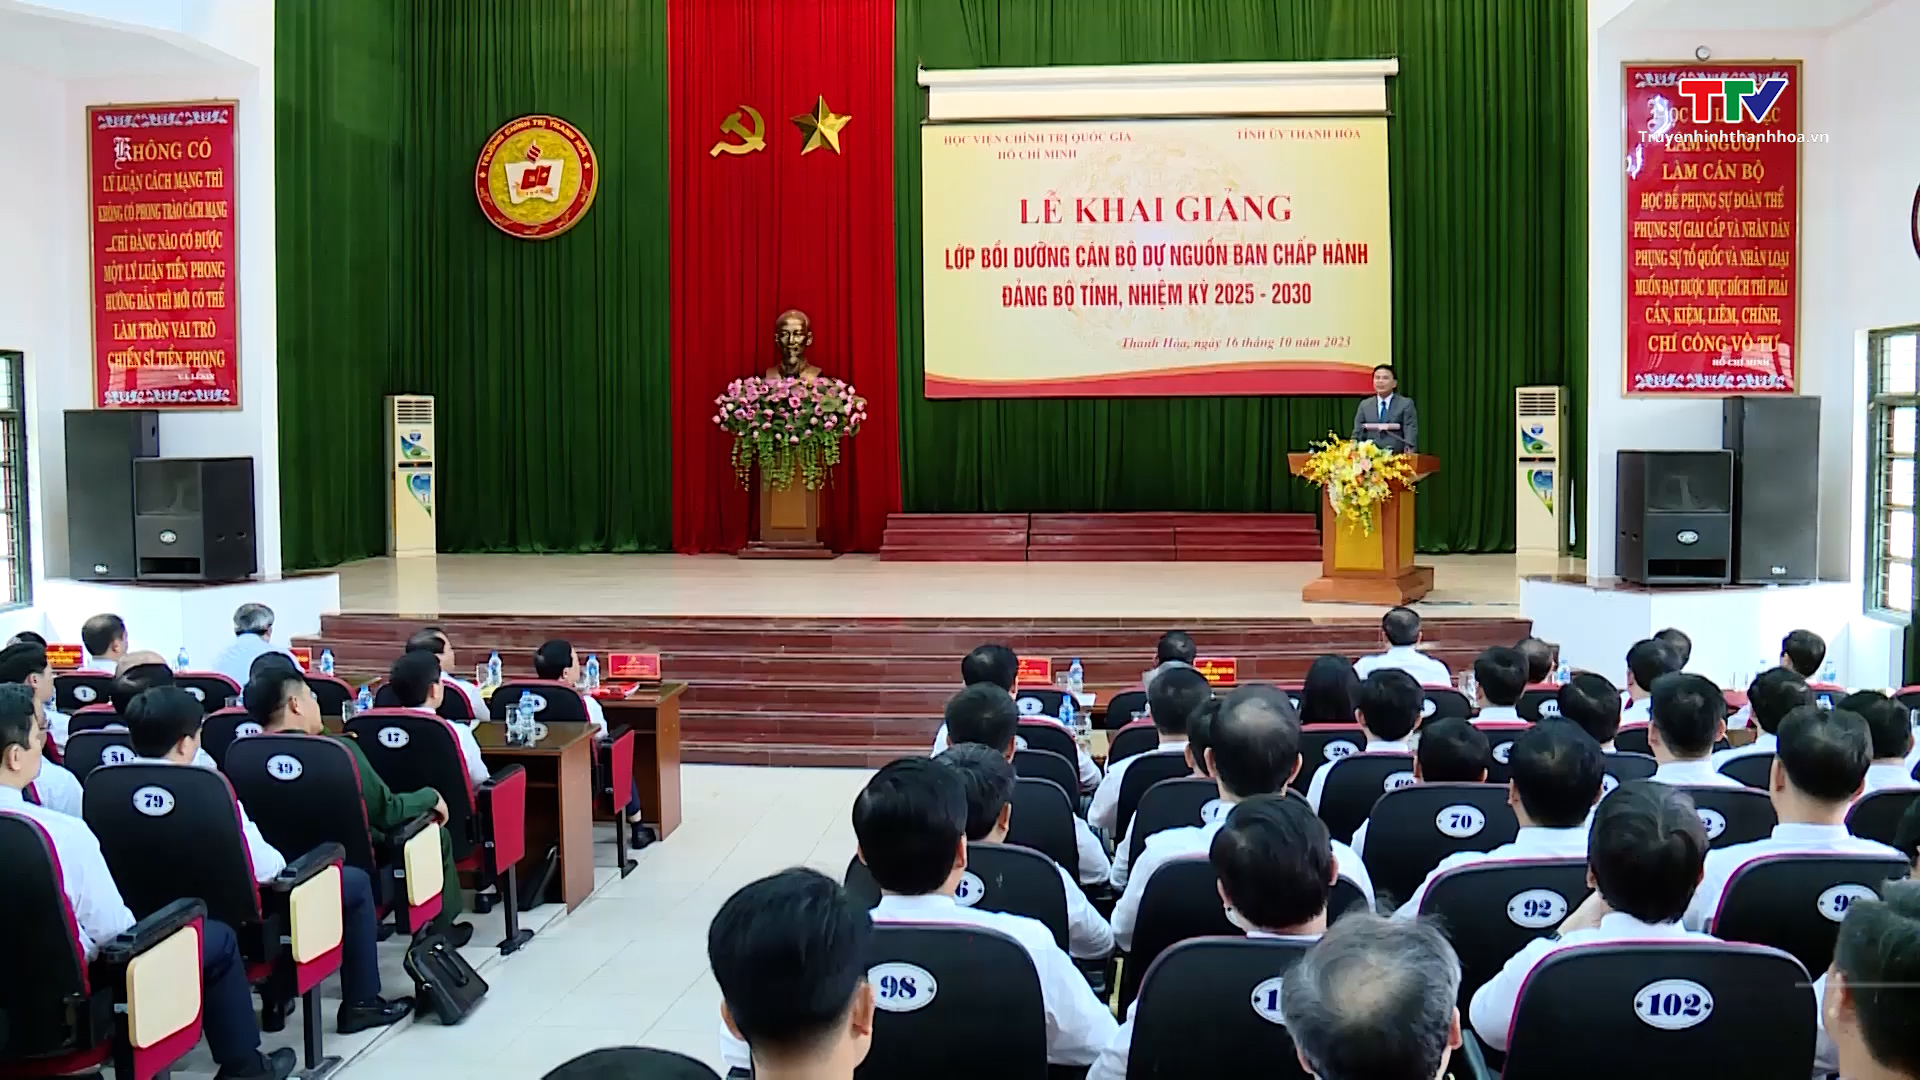 Khai giảng lớp bồi dưỡng cán bộ dự nguồn Ban Chấp hành Đảng bộ tỉnh, nhiệm kỳ 2025-2030 - Ảnh 2.